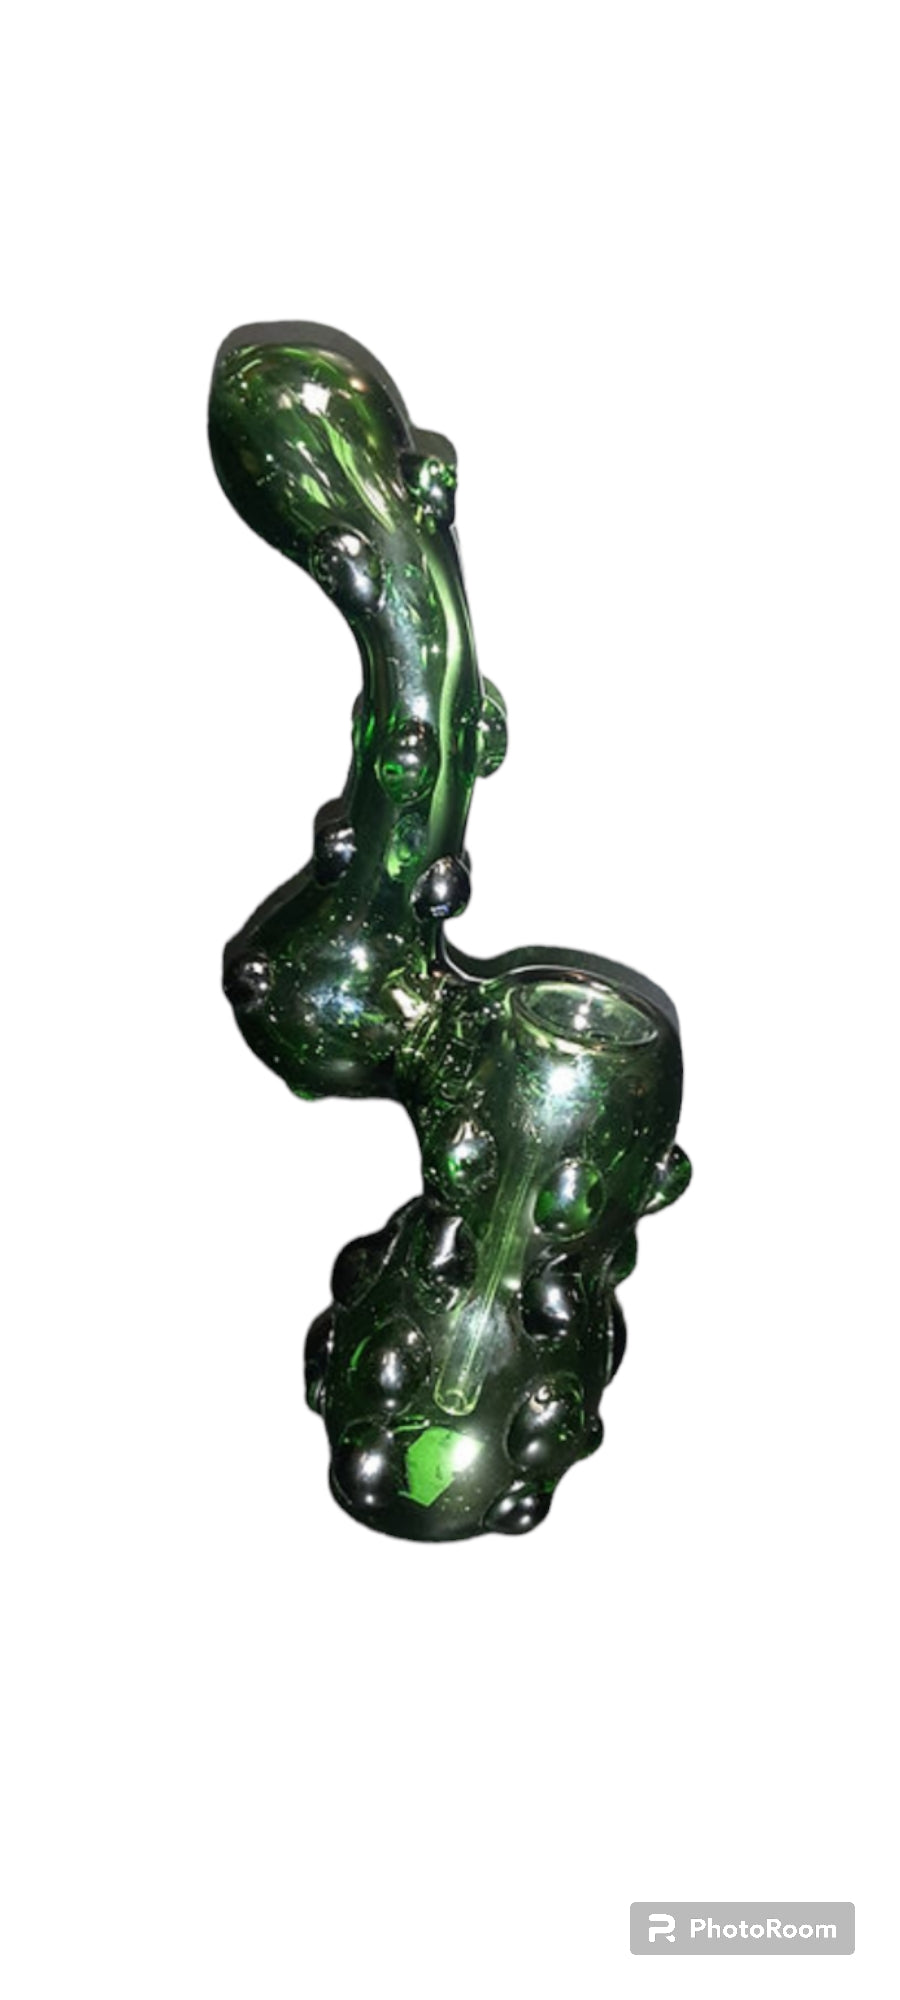 Green & Bumpy Pipe